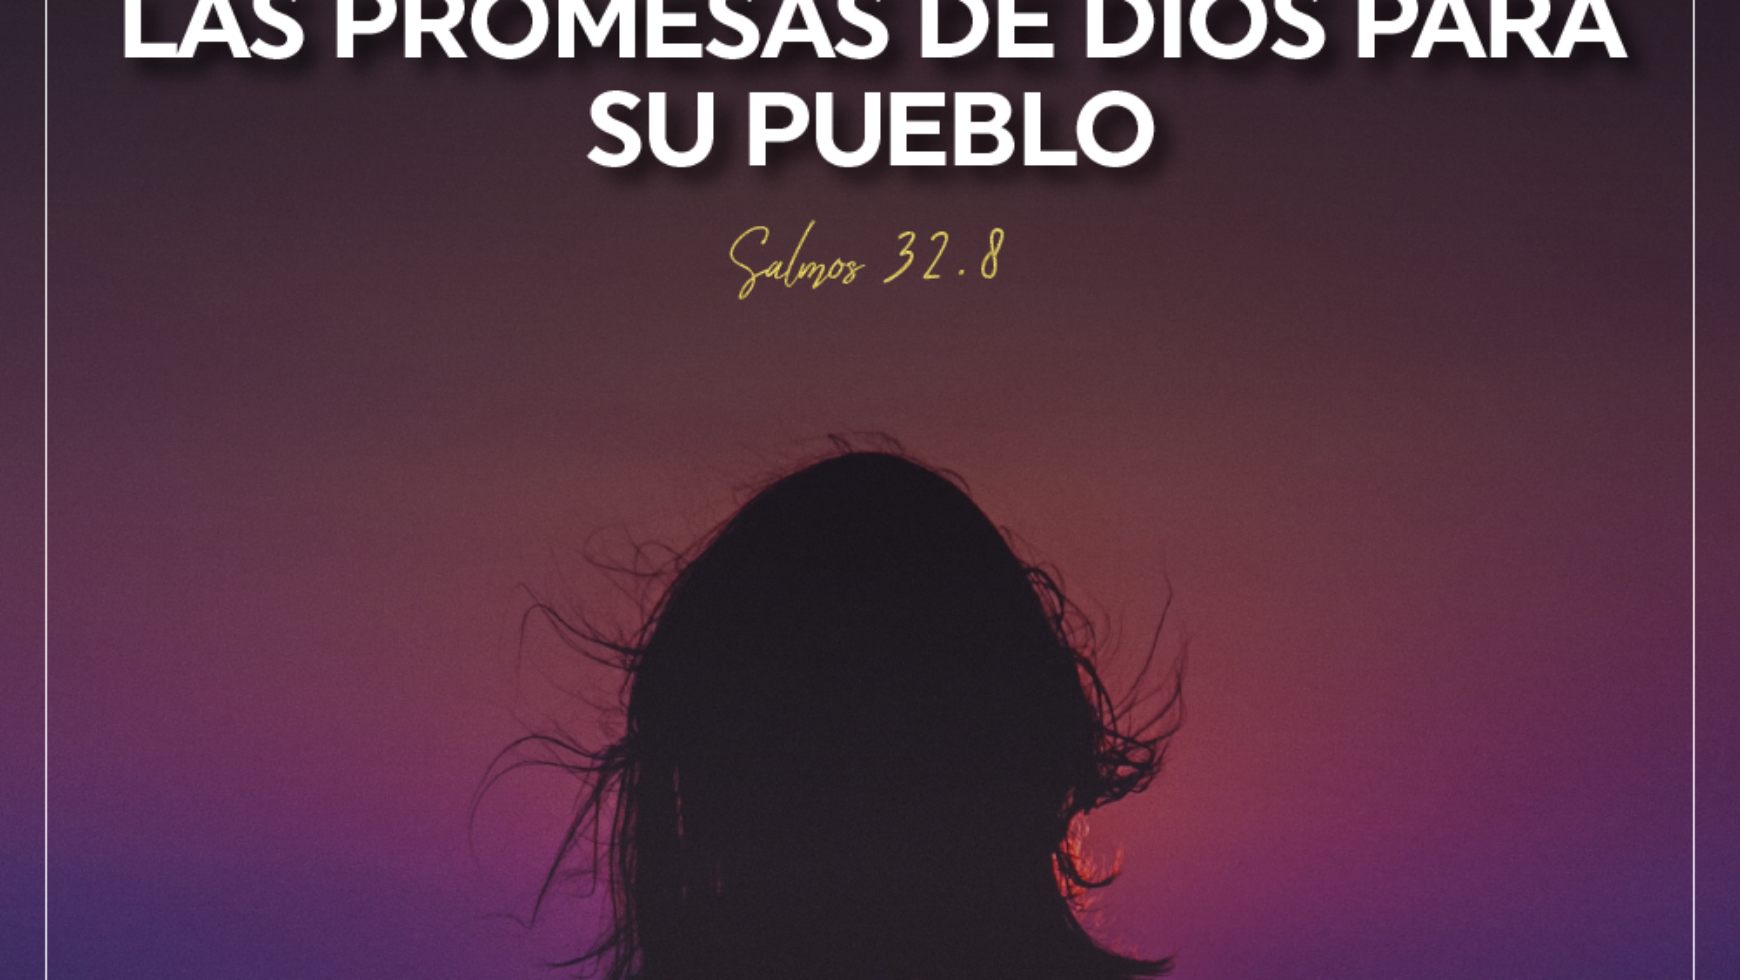 Las promesas de Dios para su pueblo